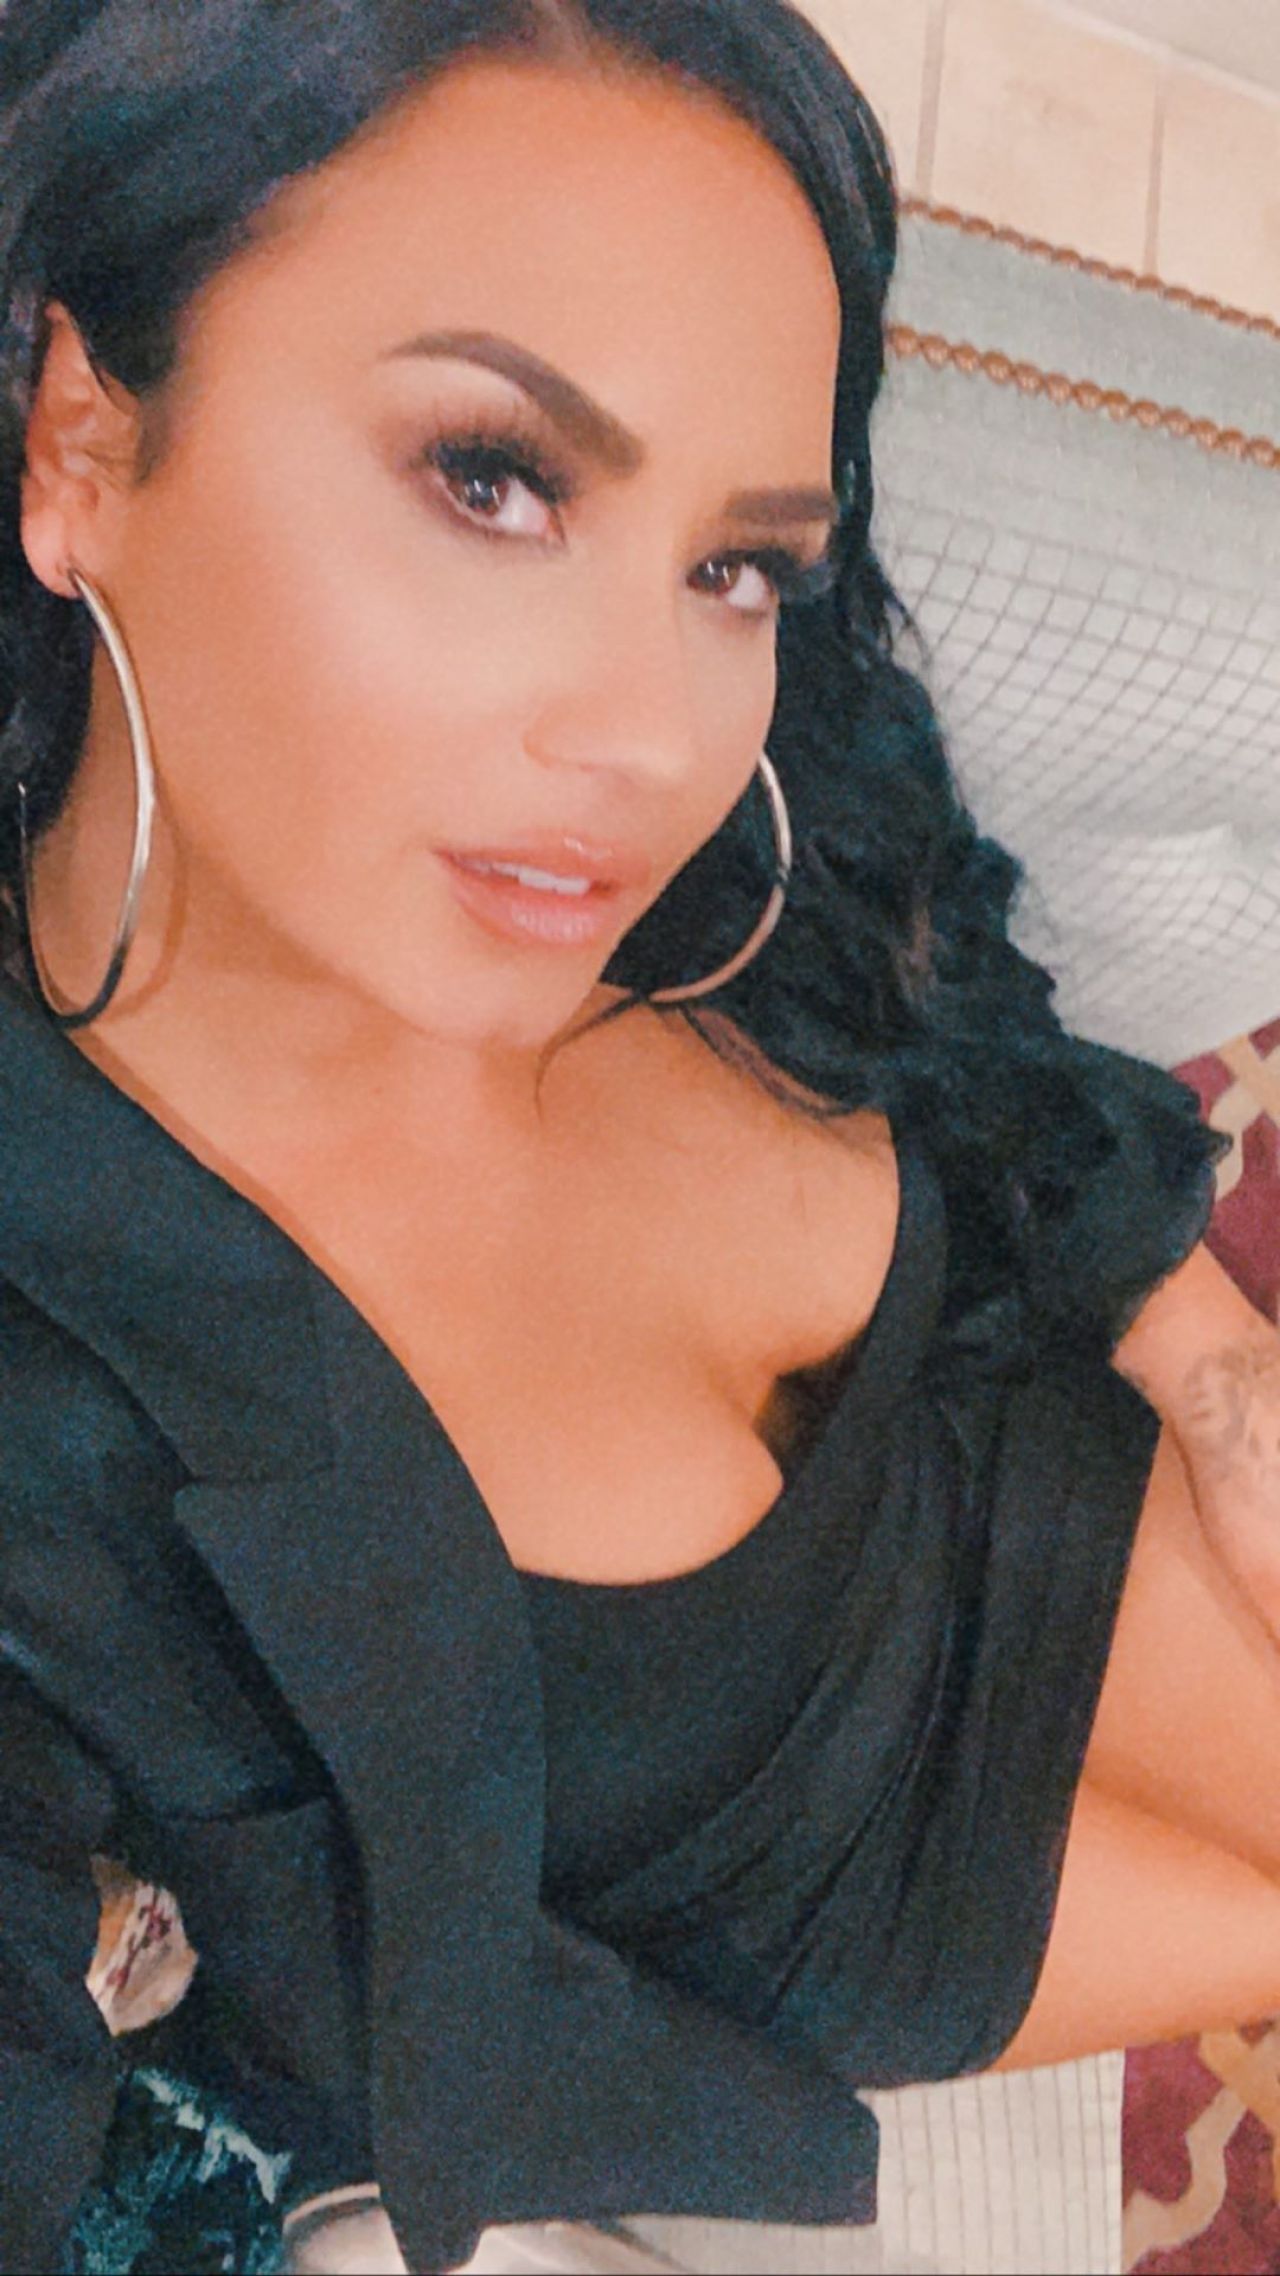 Demi Lovato - Social Media 02/03/2020